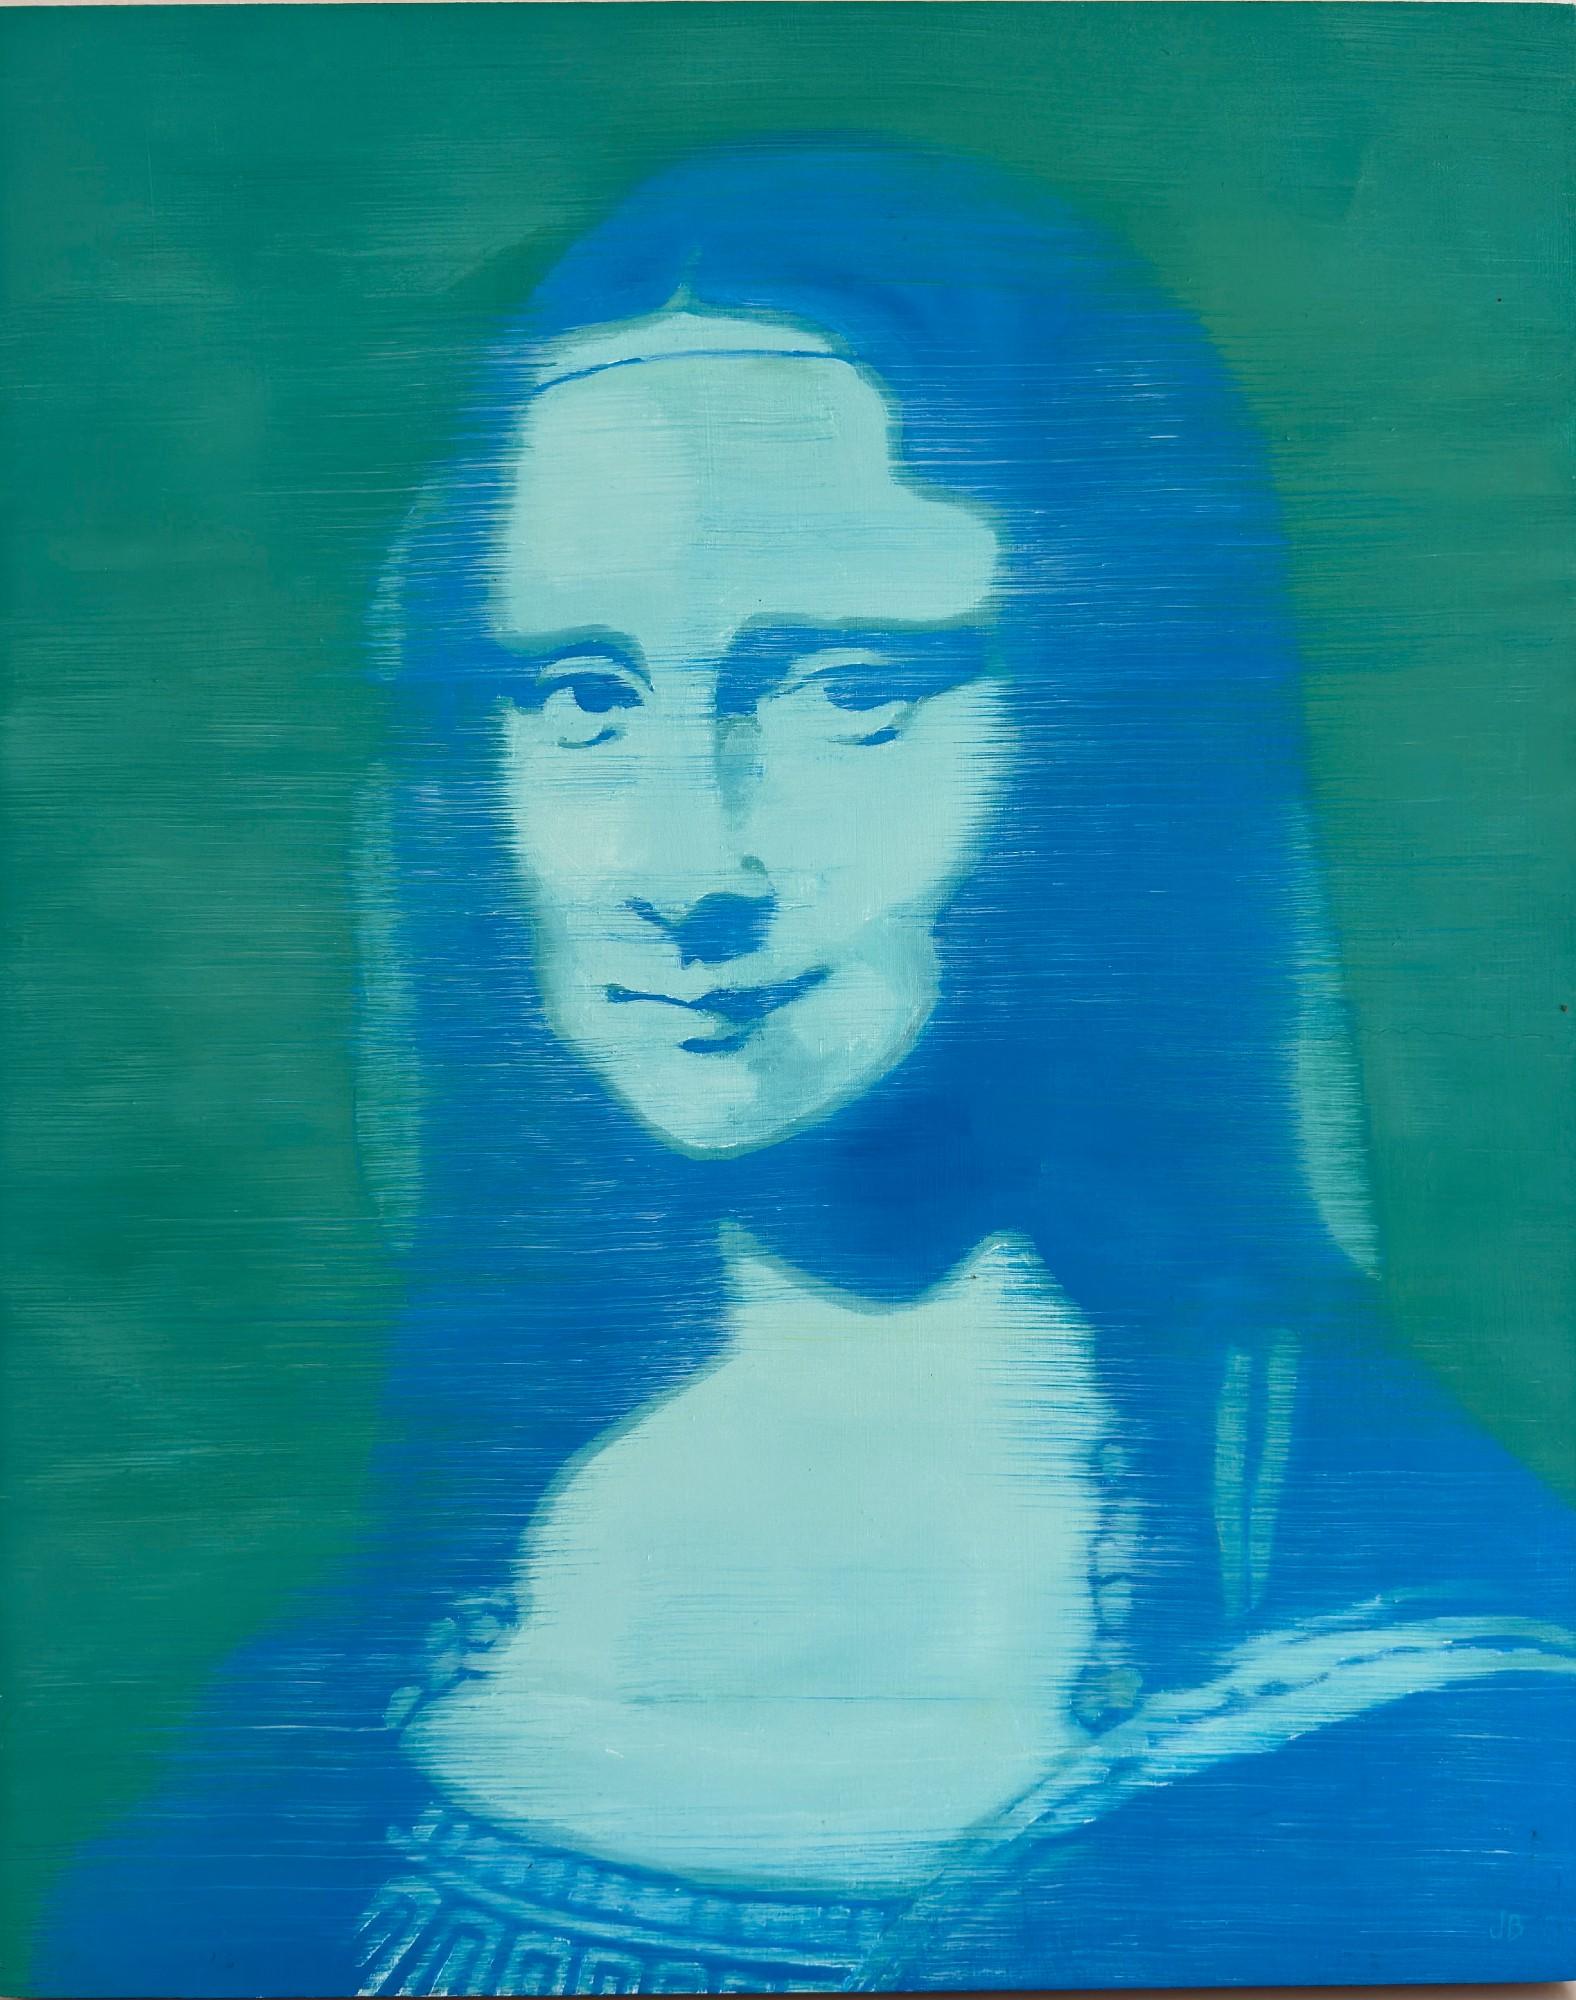 Portrait Painting Joan Breckwoldt - Mona Lisa in Blue 20" x 16 " Huile sur panneau de bouleau Unique Iconic Style Contemporary